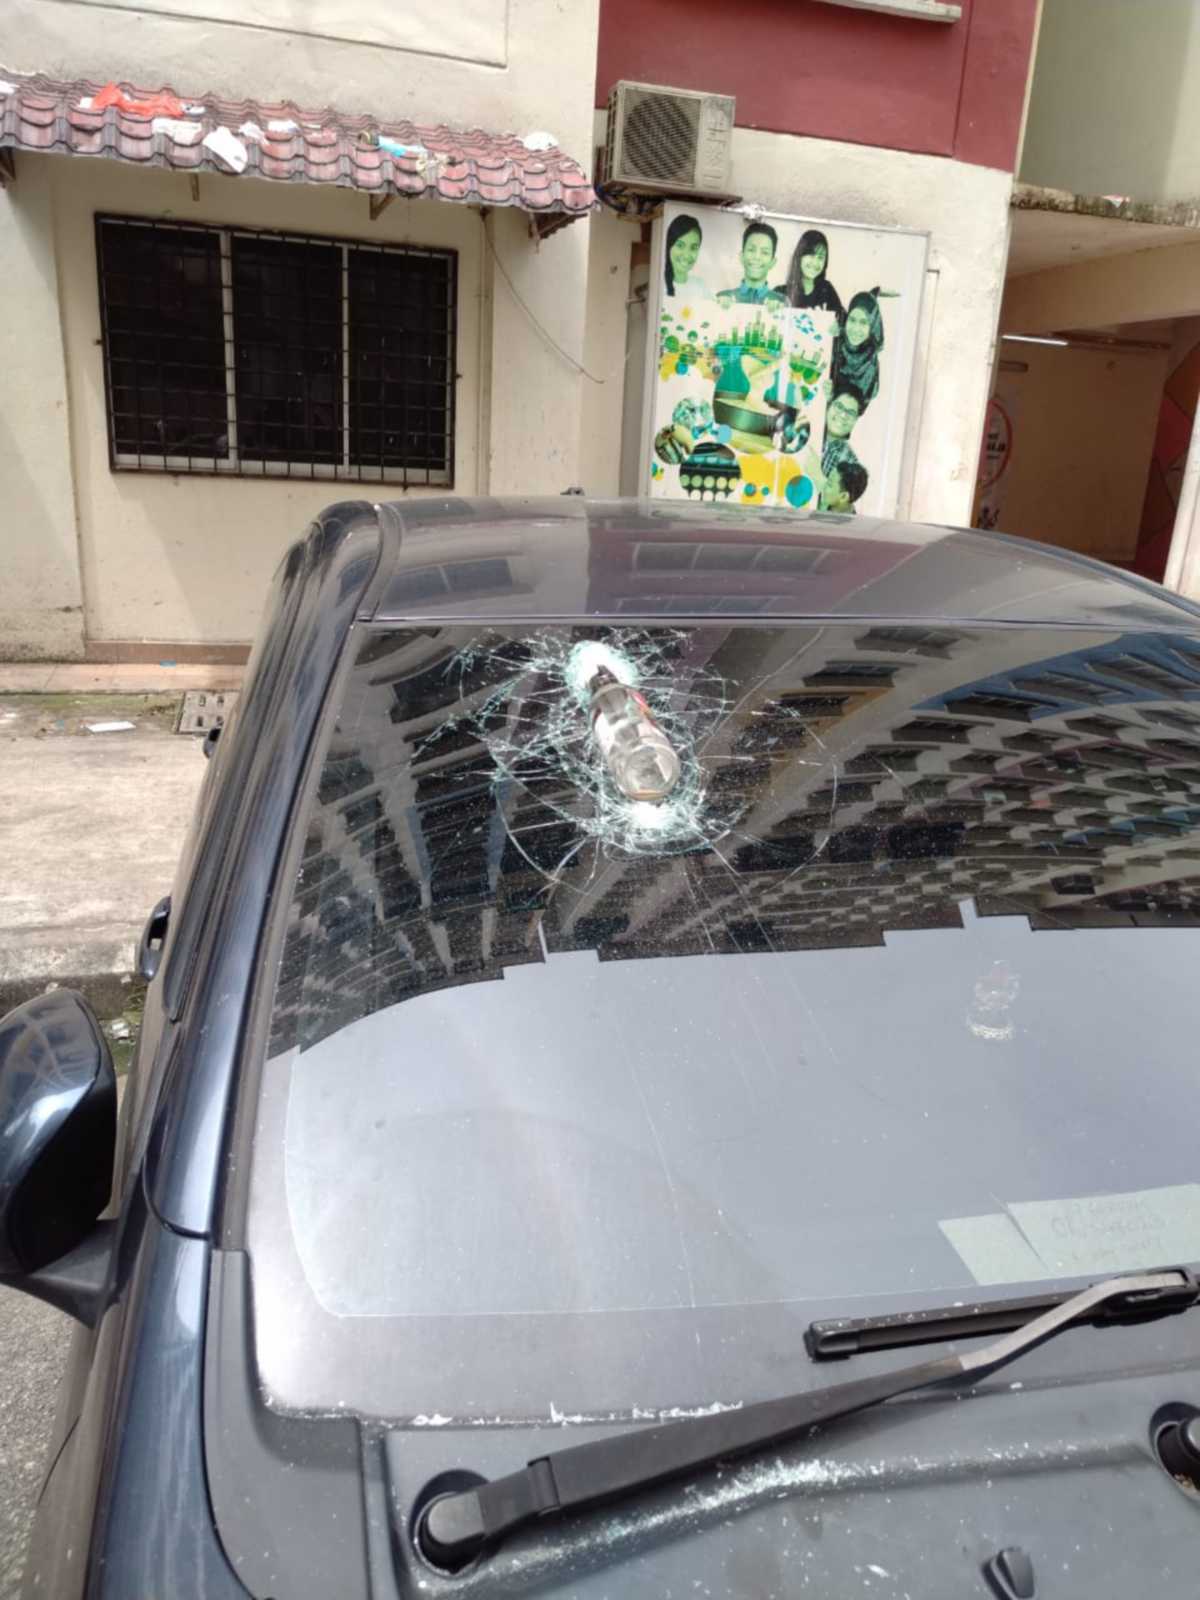 BARANG yang dibuang menimpa cermin sebuah kereta.